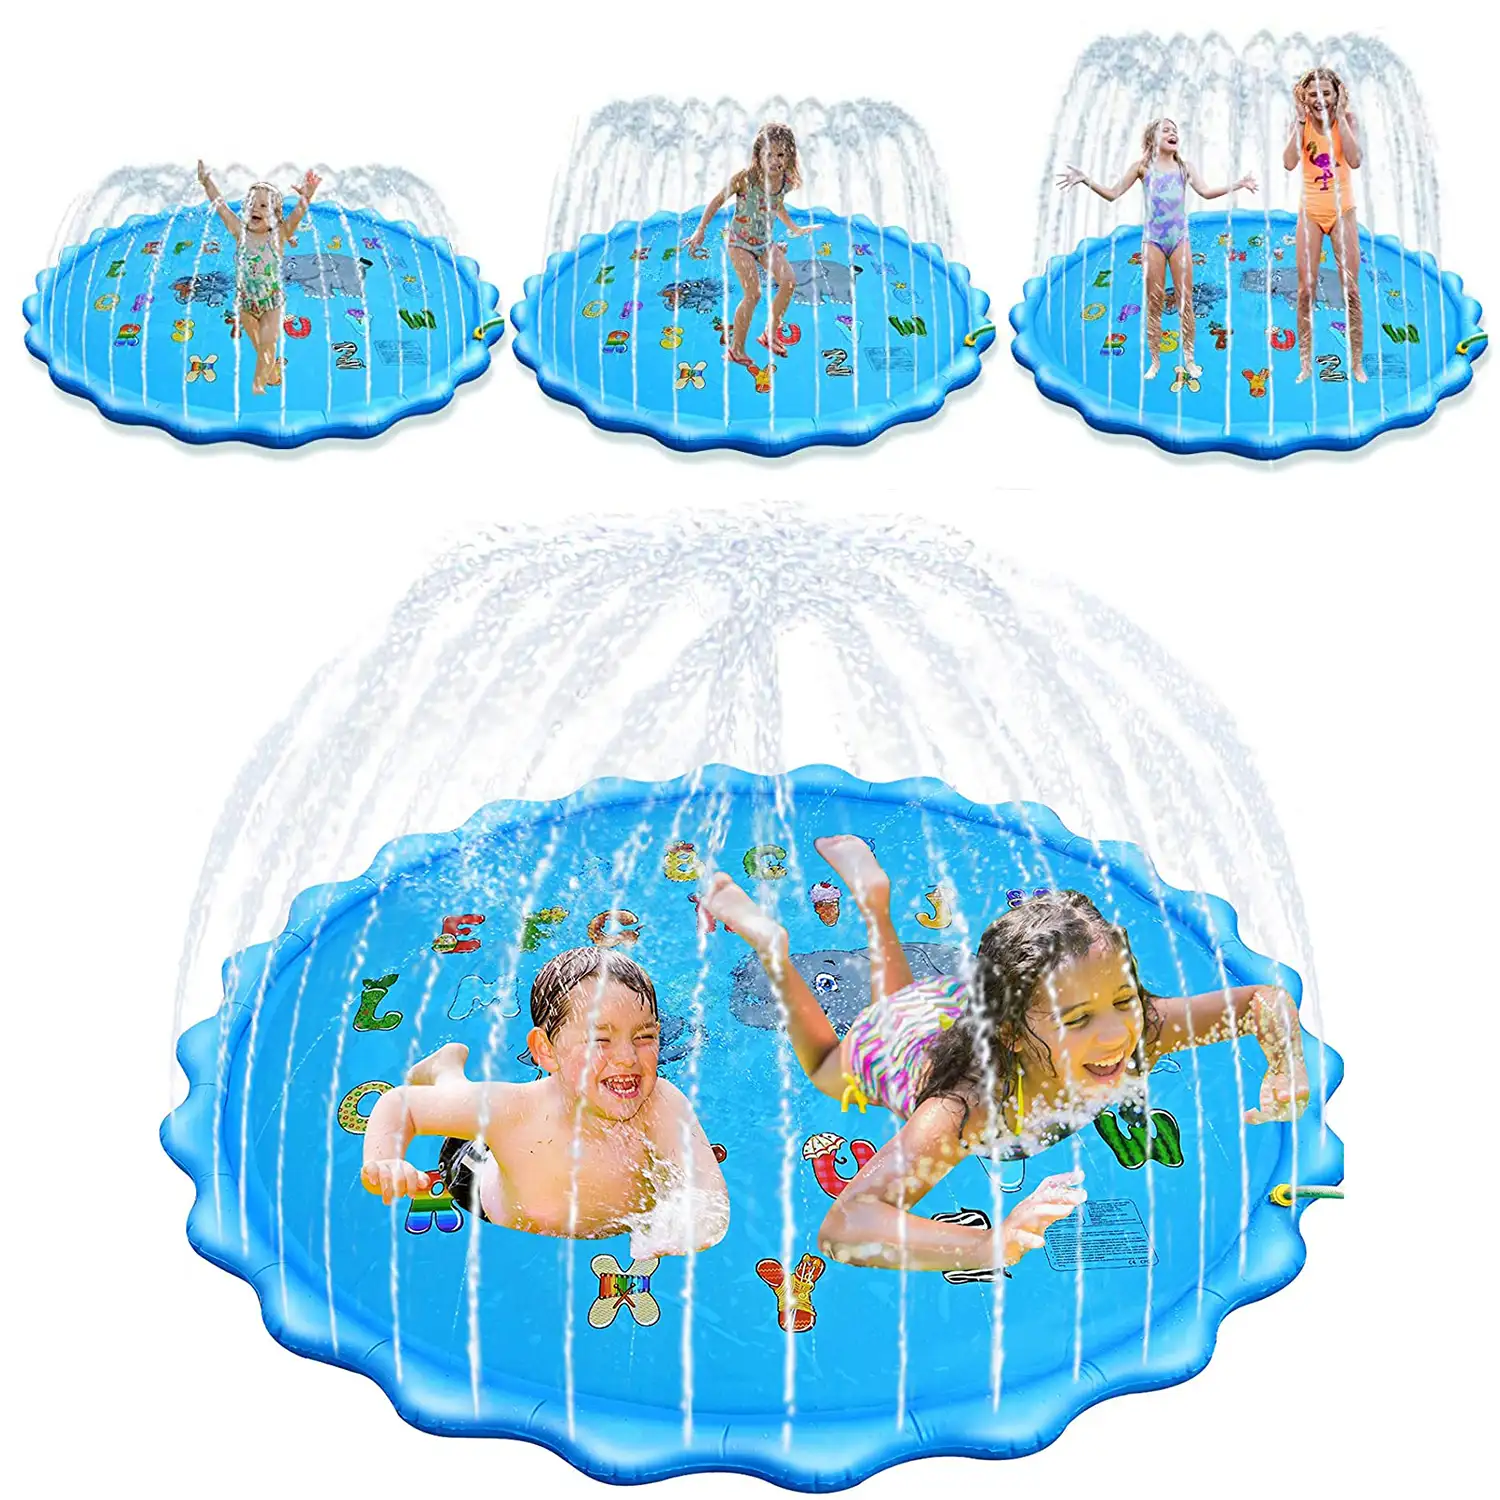 Splash Pad. Juguete inflable con aspersor de agua para jugar. 200cm de diámetro. Diseño animalitos y abecedario.